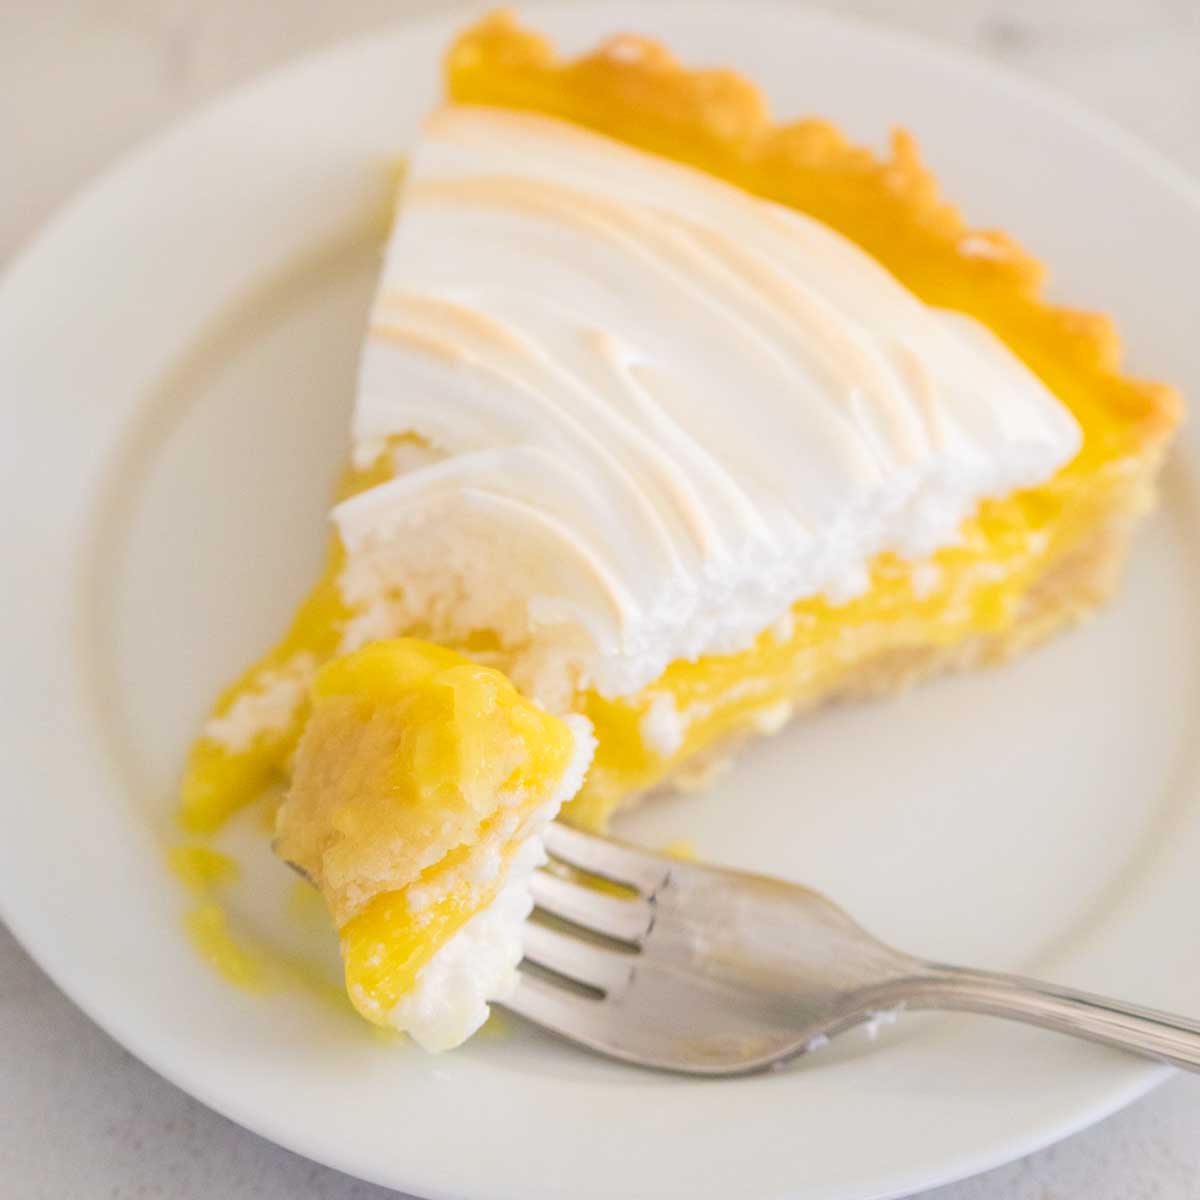 A slice of lemon meringue tart has a fork taking a bite.